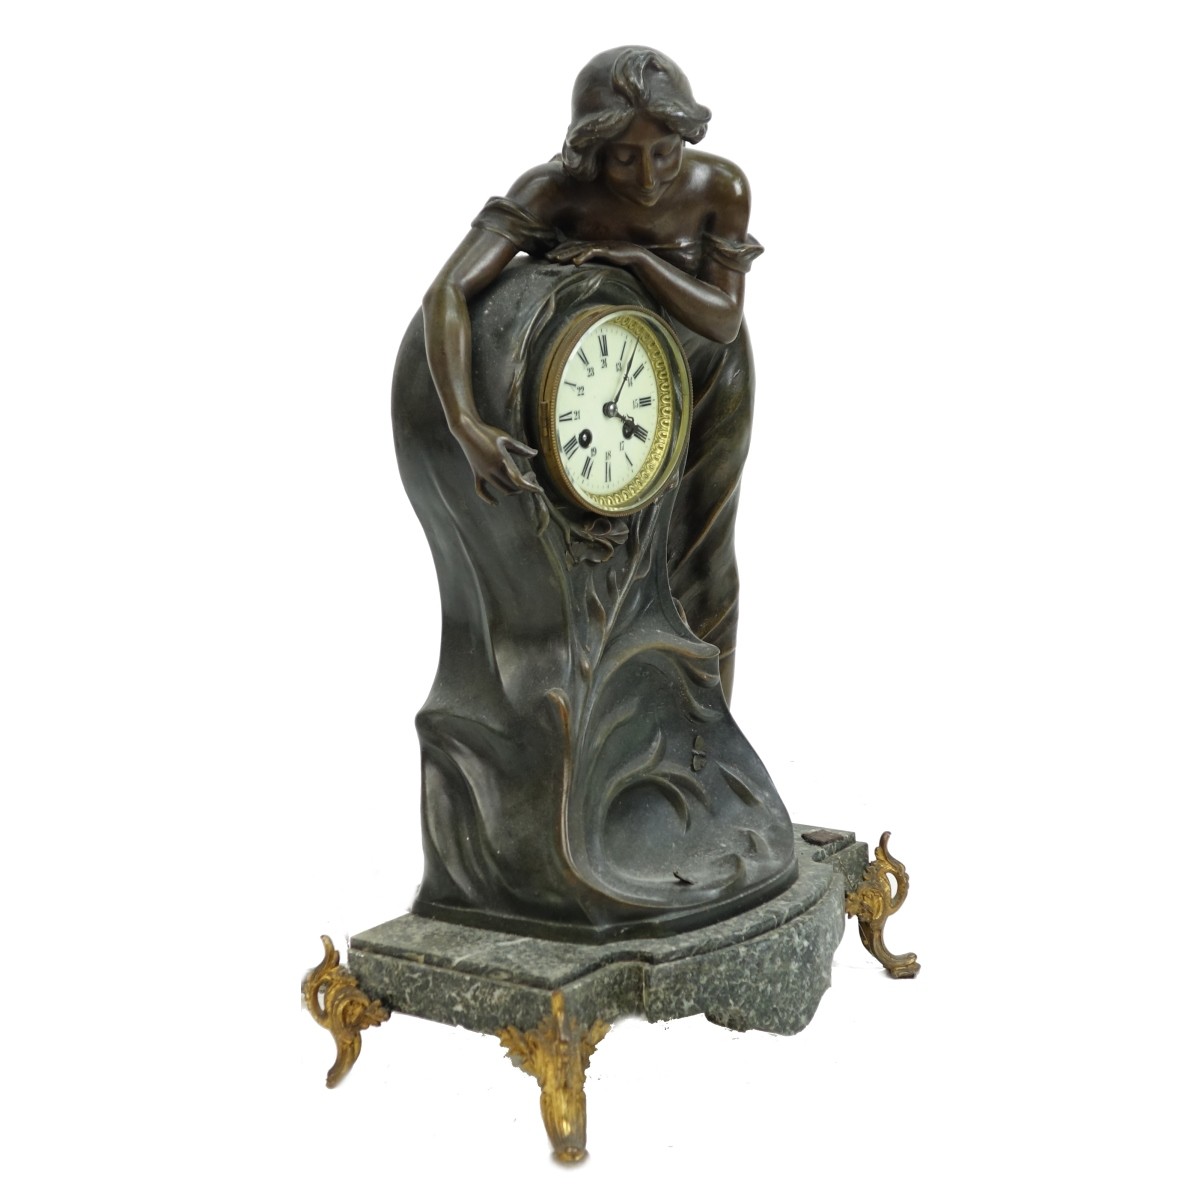 Antique Art Nouveau Clock